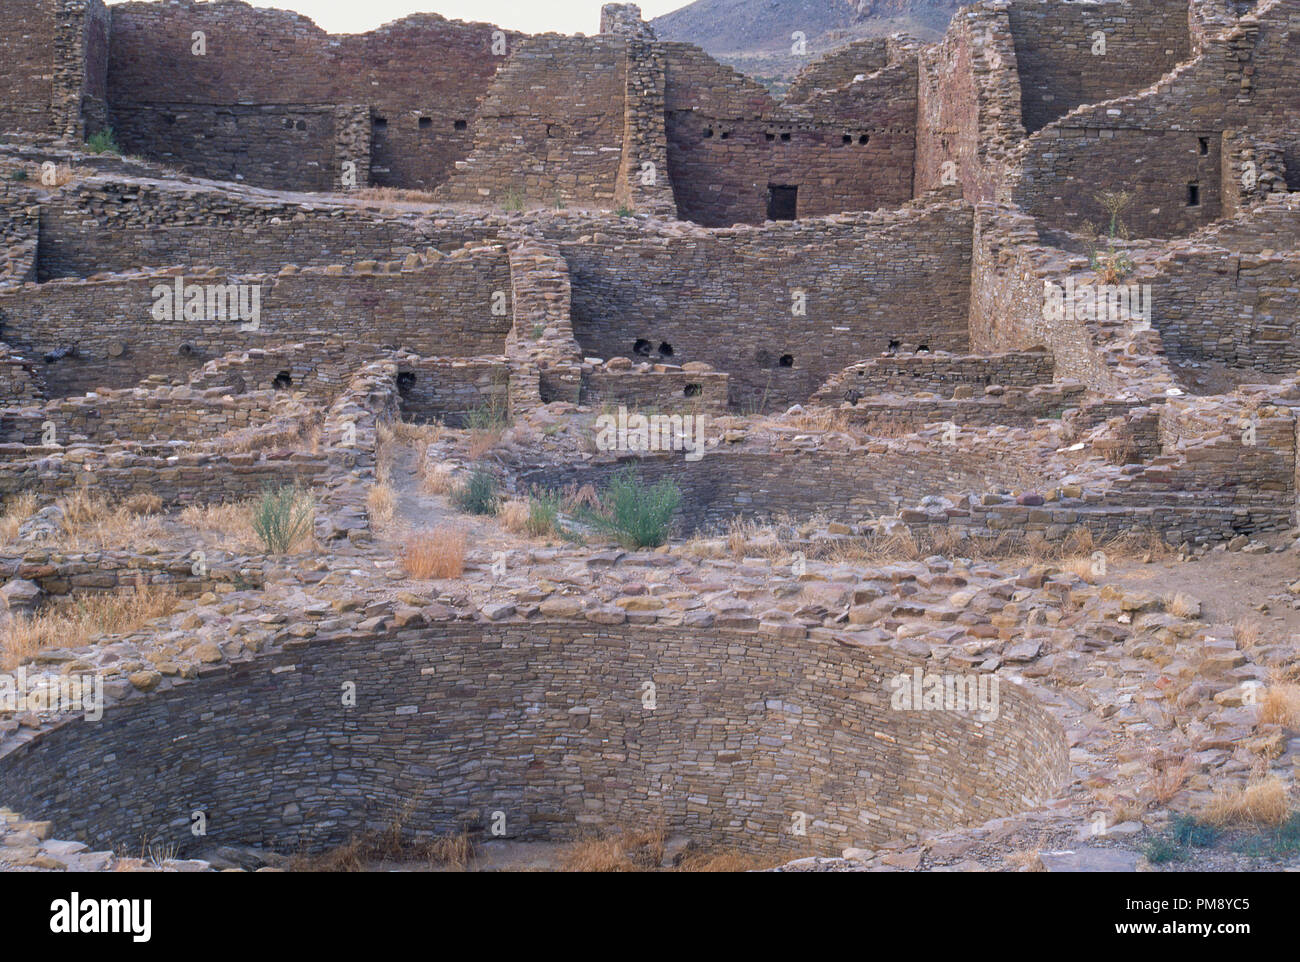 Kiva Anasazi ruines à Pueblo del Arroyo, Chaco Canyon, Nouveau Mexique. Photographie Banque D'Images